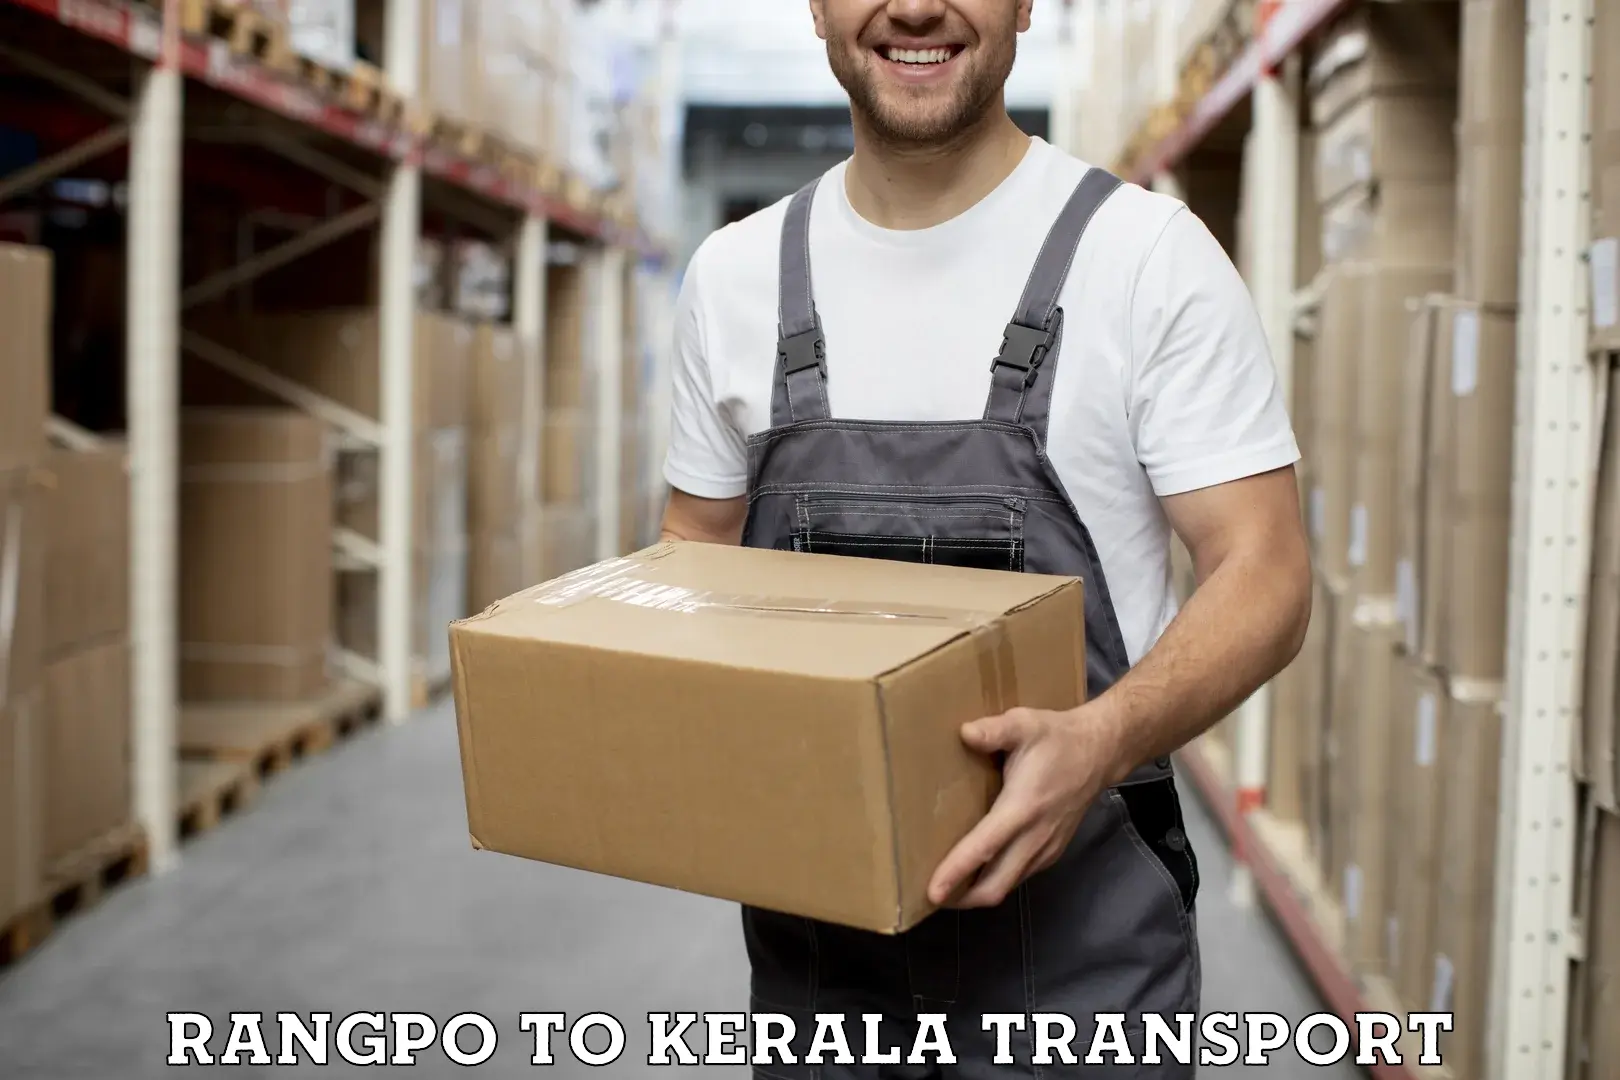 Nearby transport service Rangpo to Kerala